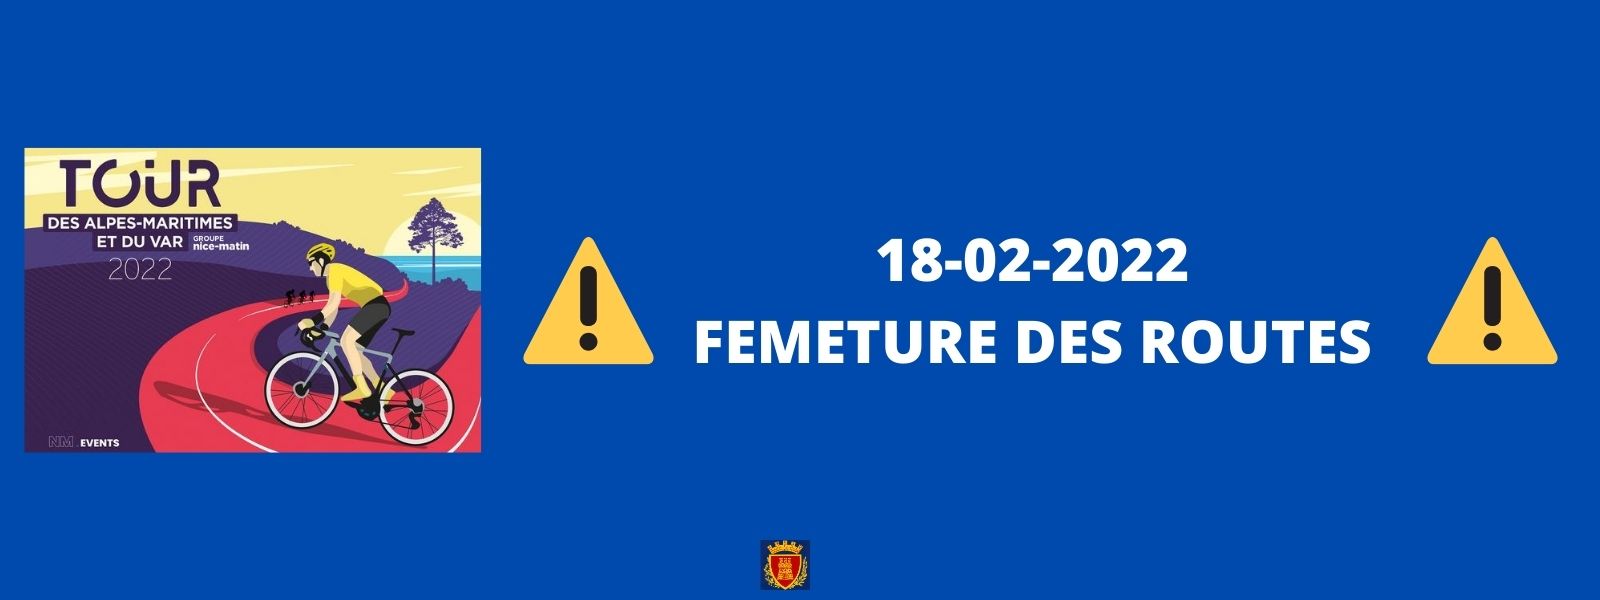 Vendredi 18 février 2022 : fermeture à la circulation de 11h45 à 13h30